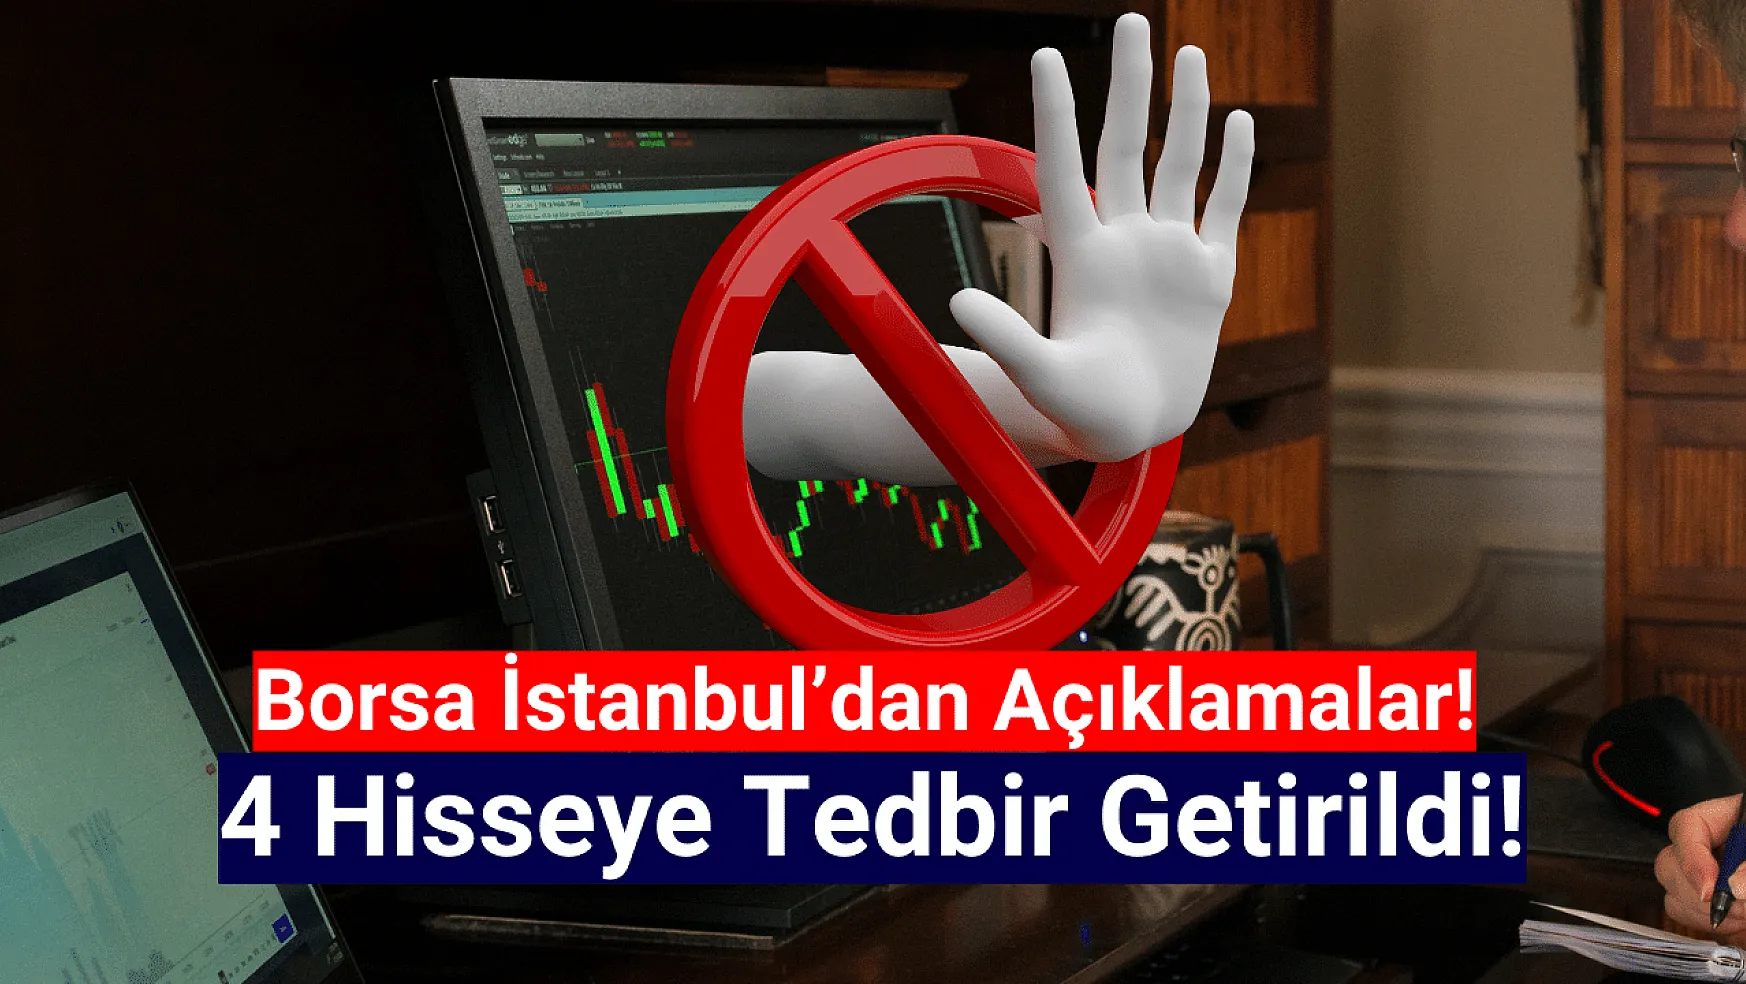 Borsa İstanbul'da 4 hisseye tedbir getirildi!